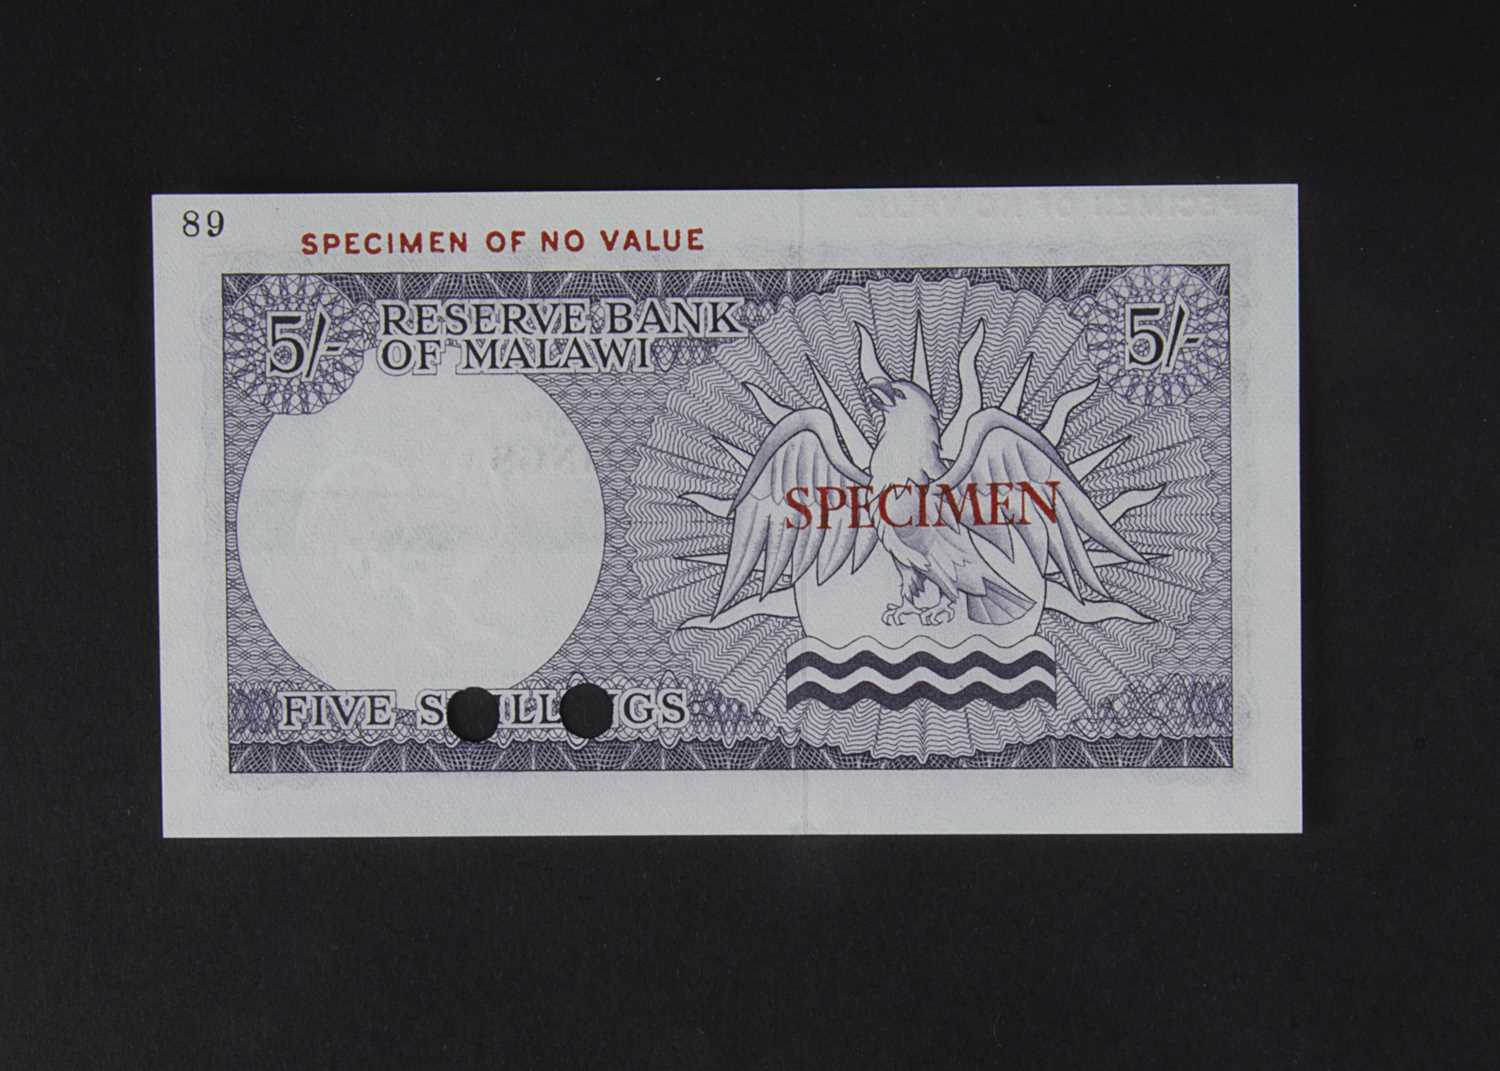 Specimen Bank Note: Reserve Bank of Malawi specimen 5 Shillings, - Image 2 of 2